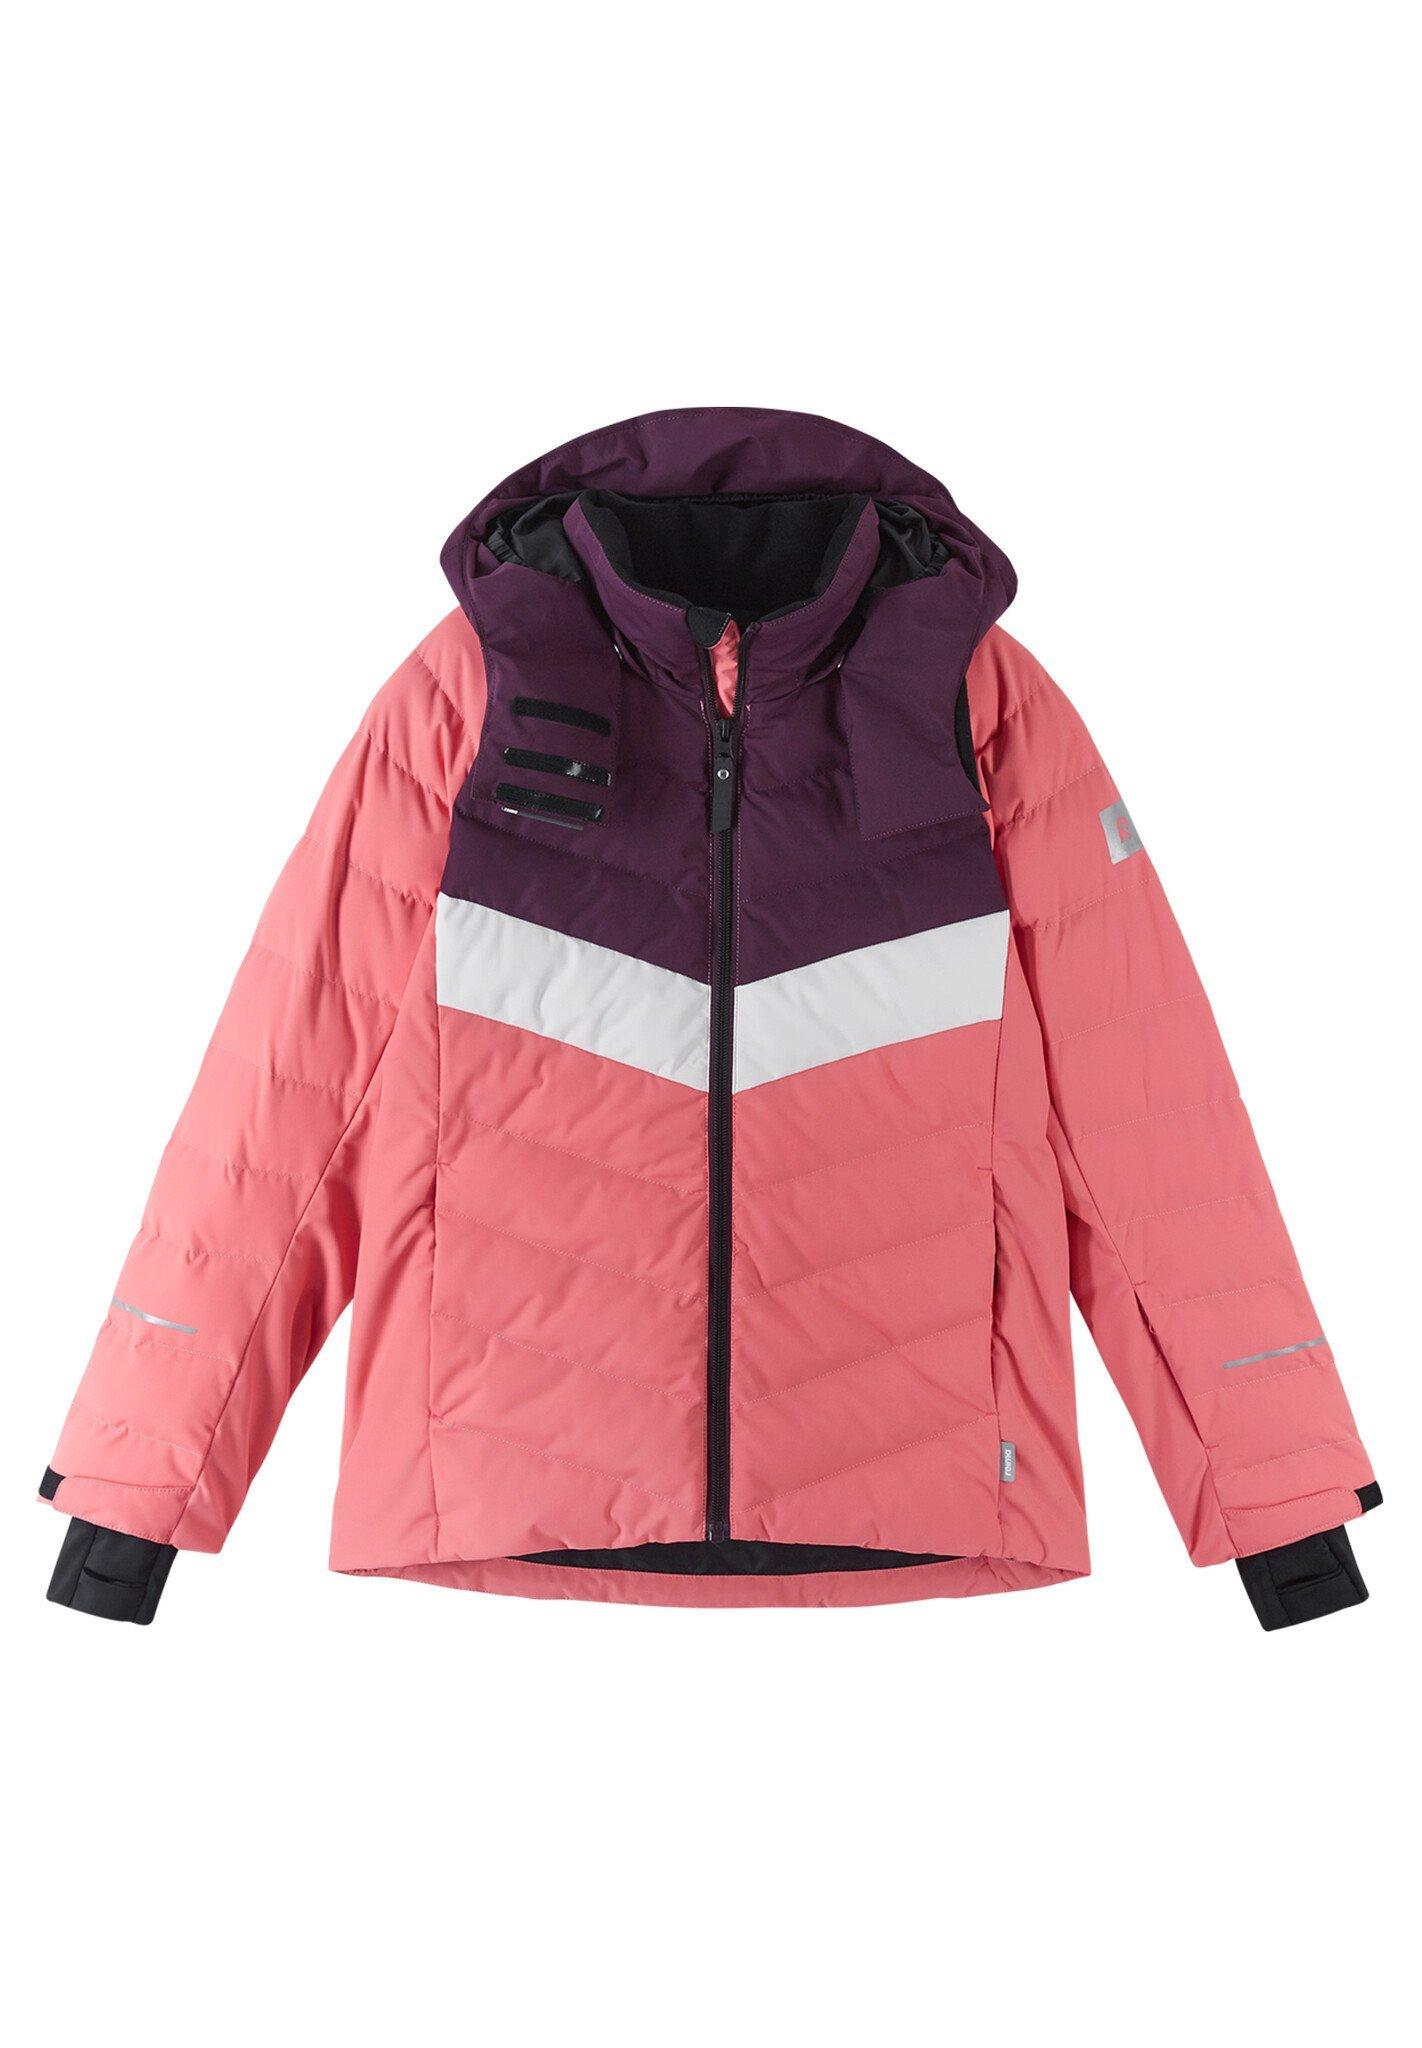 Kinder Skijacke Luppo Pink Coral Mädchen Pink 158 von Reima